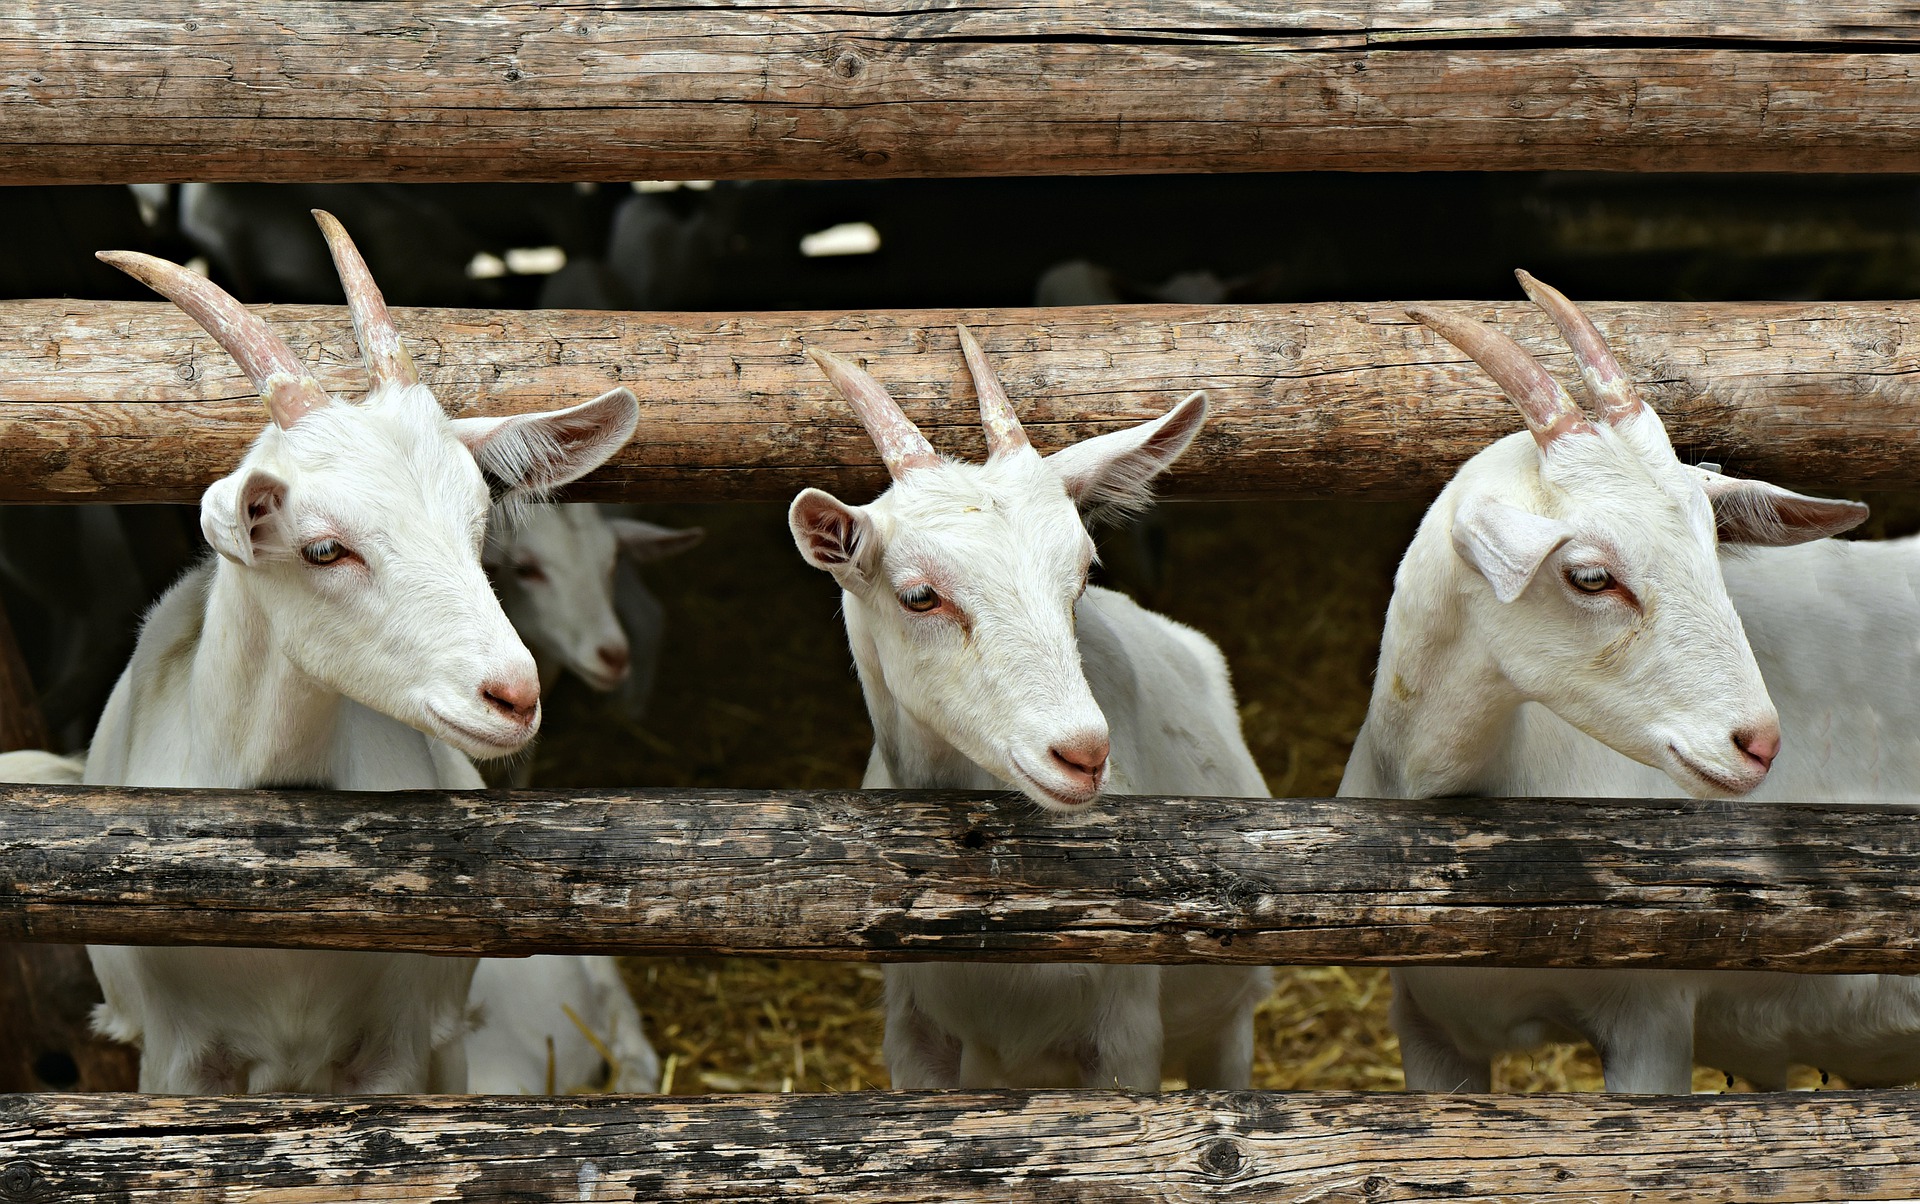 Fotografía de cuatro cabras blancas en un corral de madera. Las cabras no están mirando a la cámara.